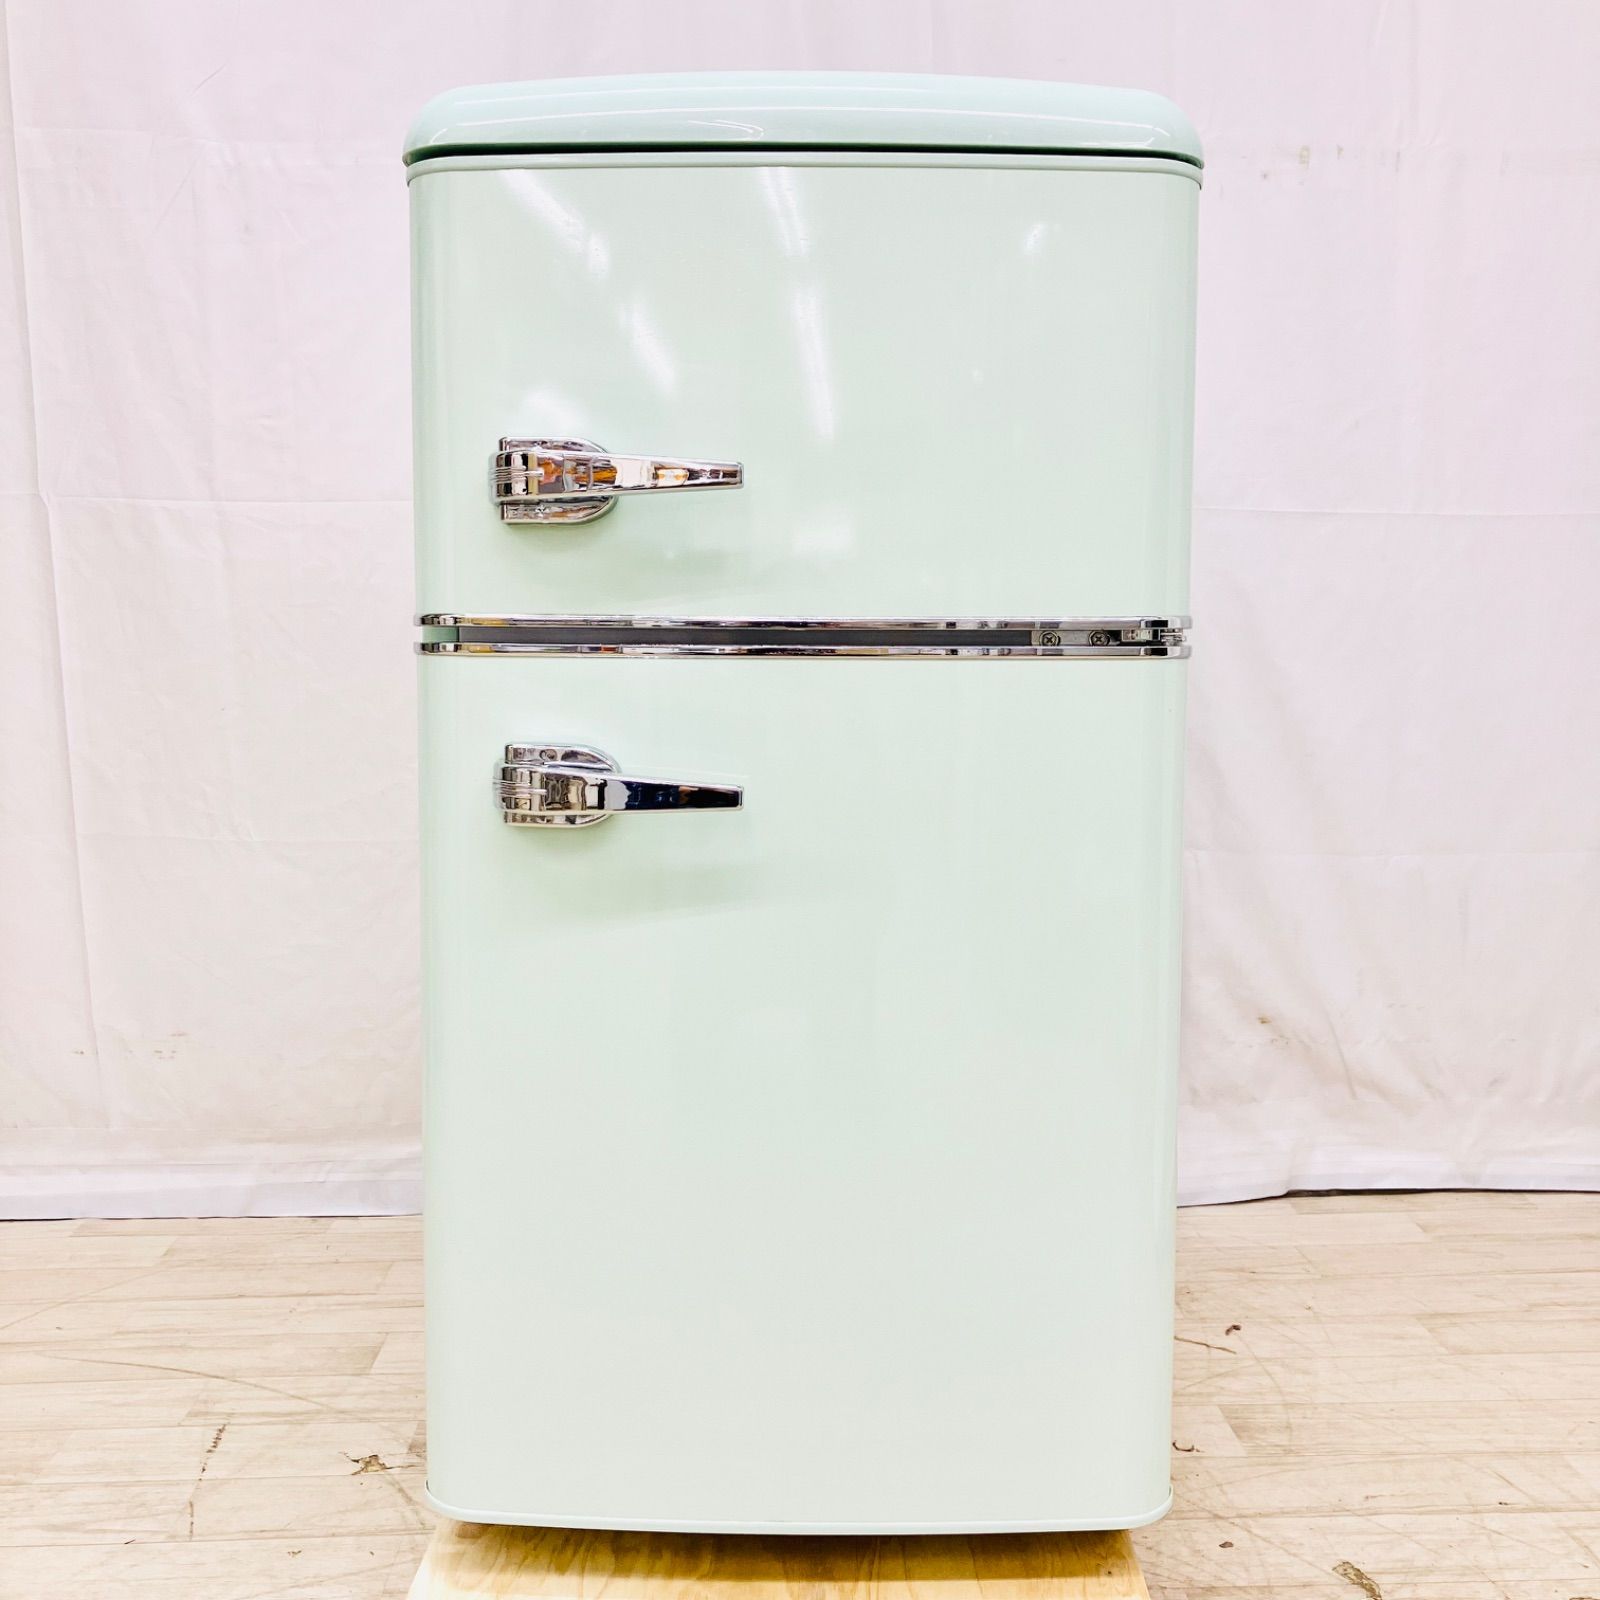 IRIS OHYAMA アイリスオーヤマ 81L 2ドア 冷凍 冷蔵庫 PRR-082D-LG